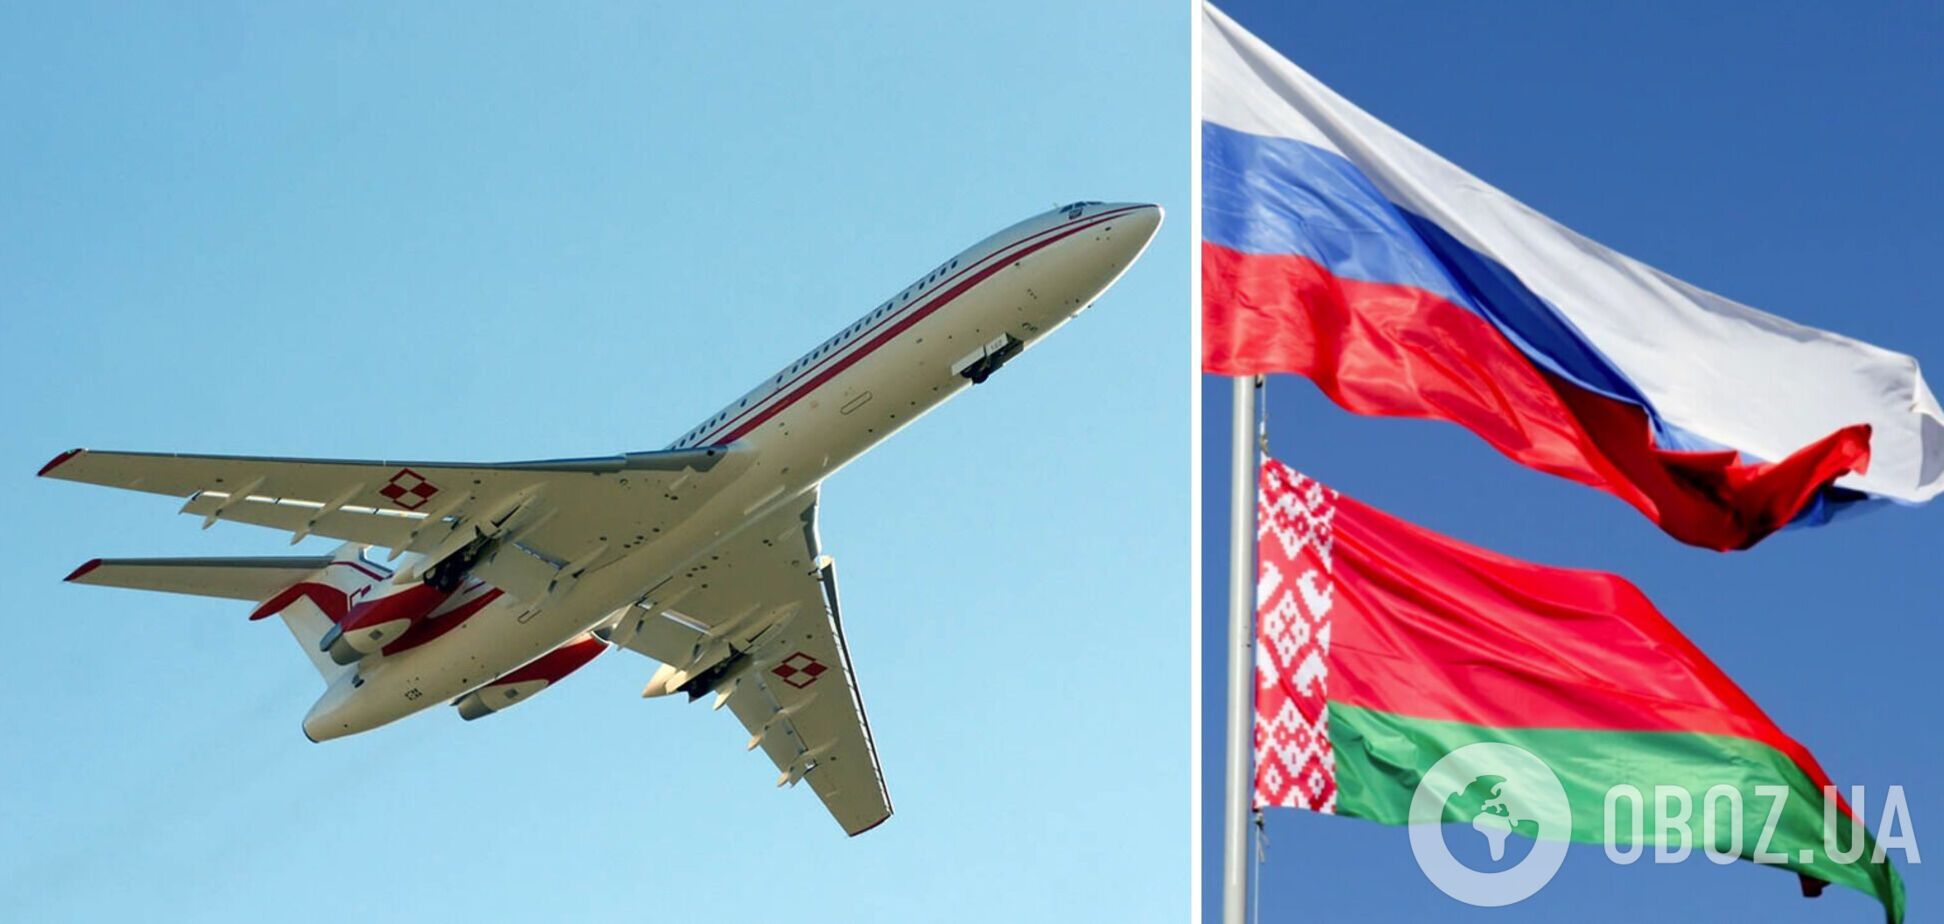 Може бути підготовкою: експерт пояснив вильоти літаків з Білорусі в РФ, через які в Україні оголошують тривогу